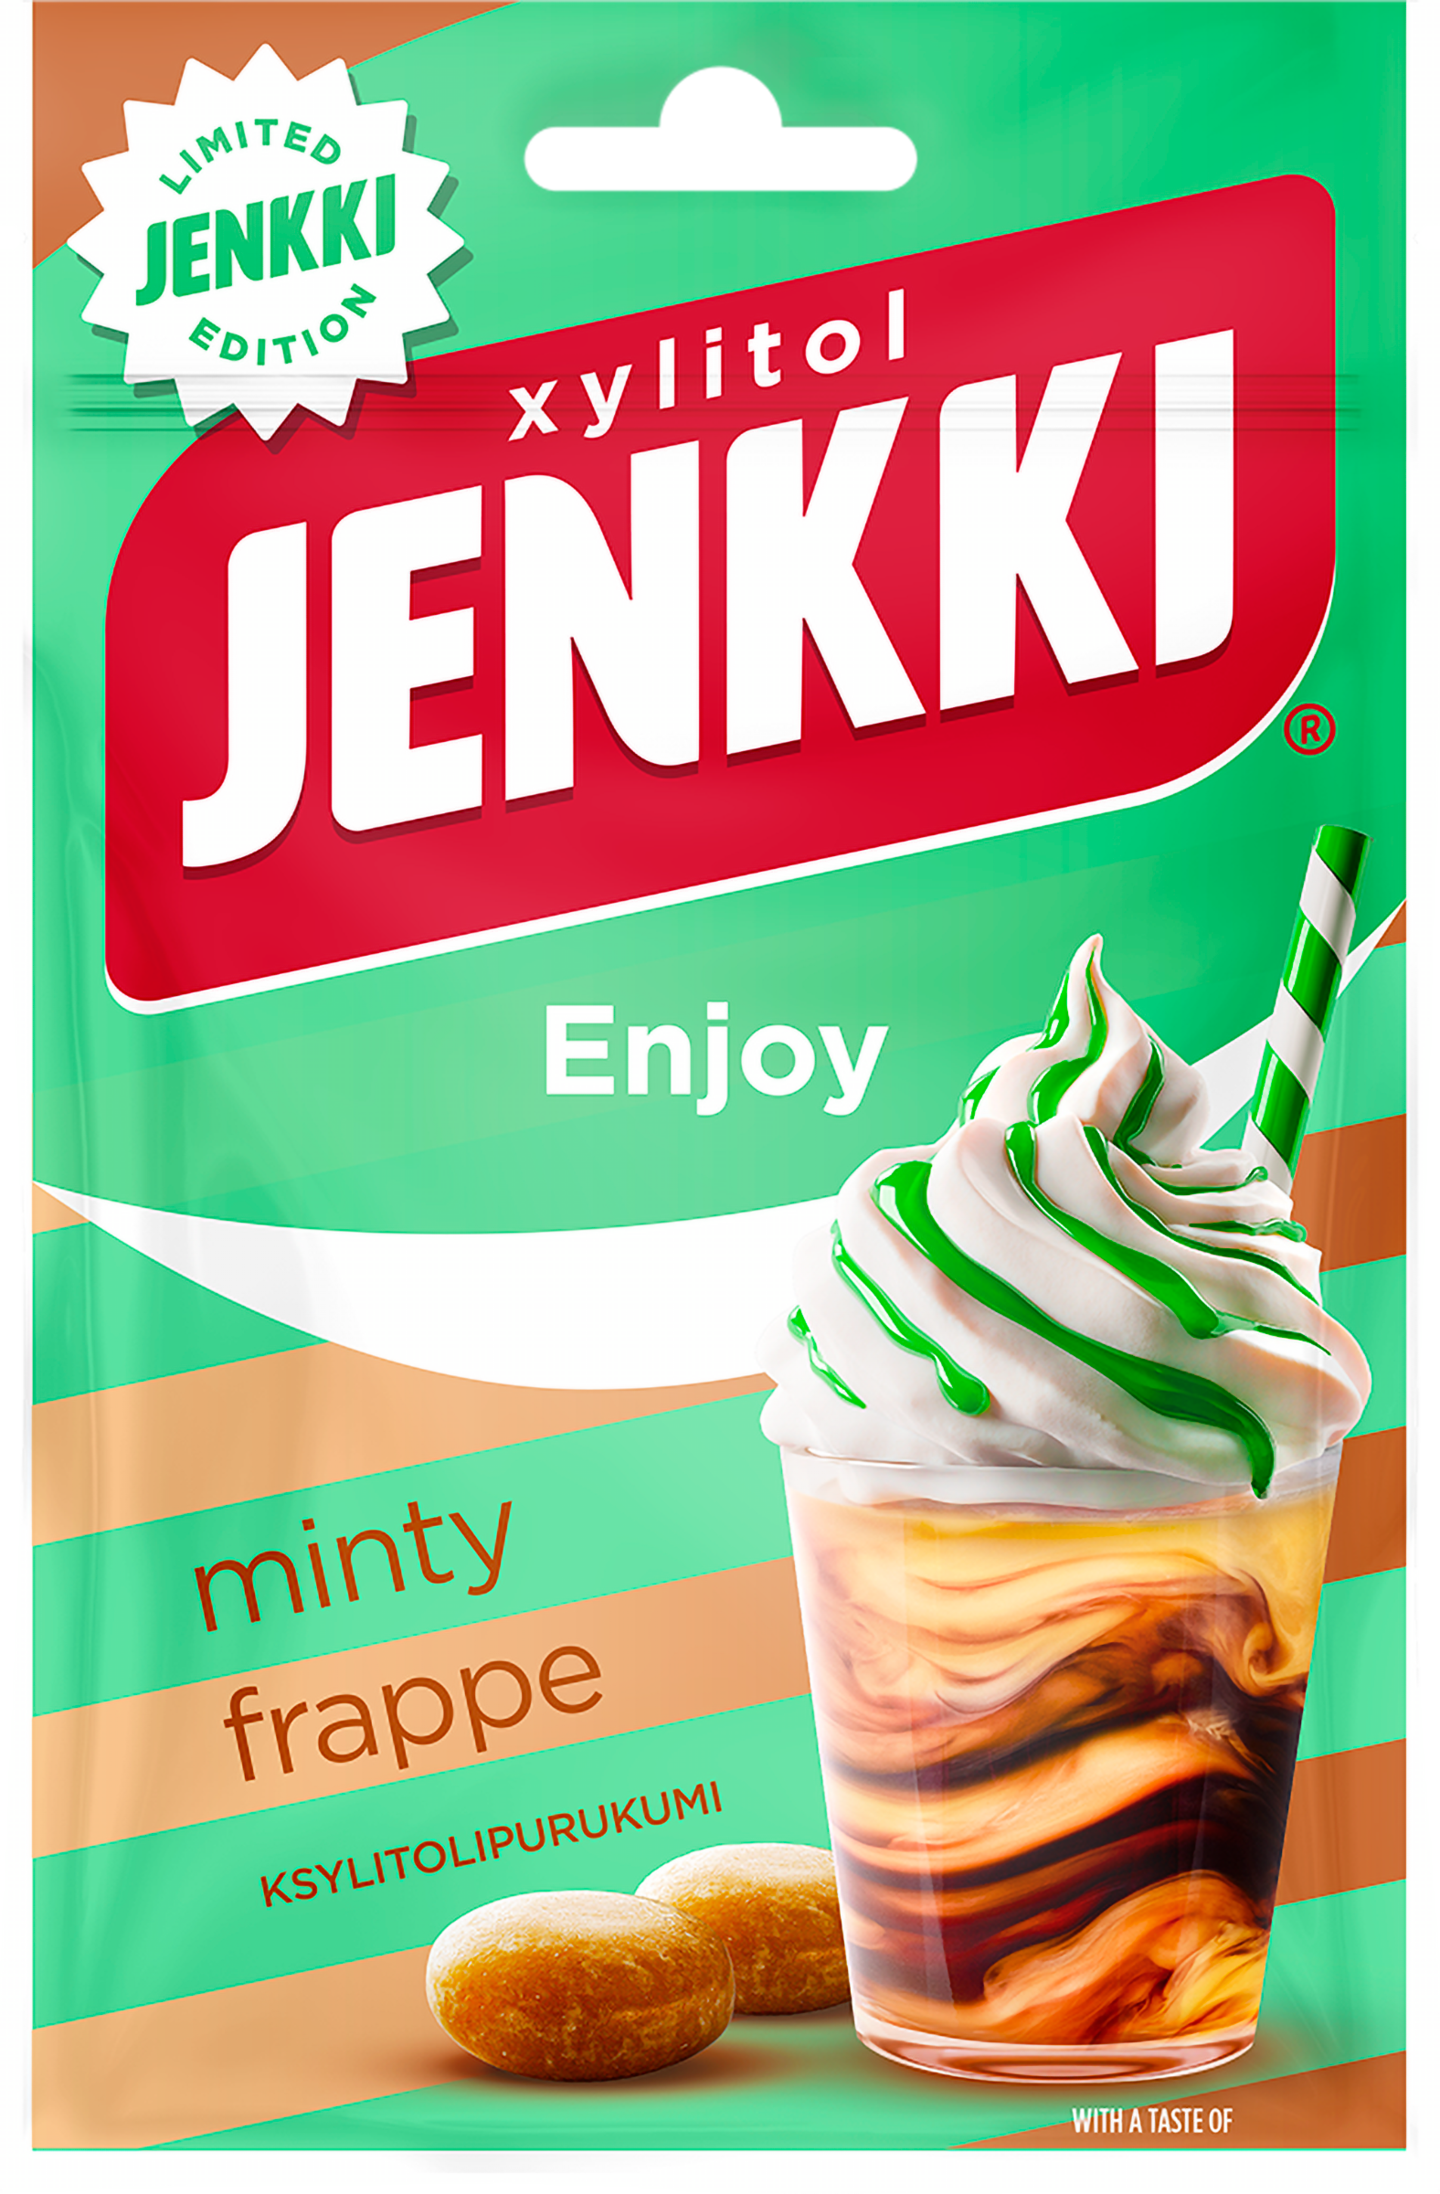 Jenkki Enjoy Minty Frappe ksylitolipurukumi 35g